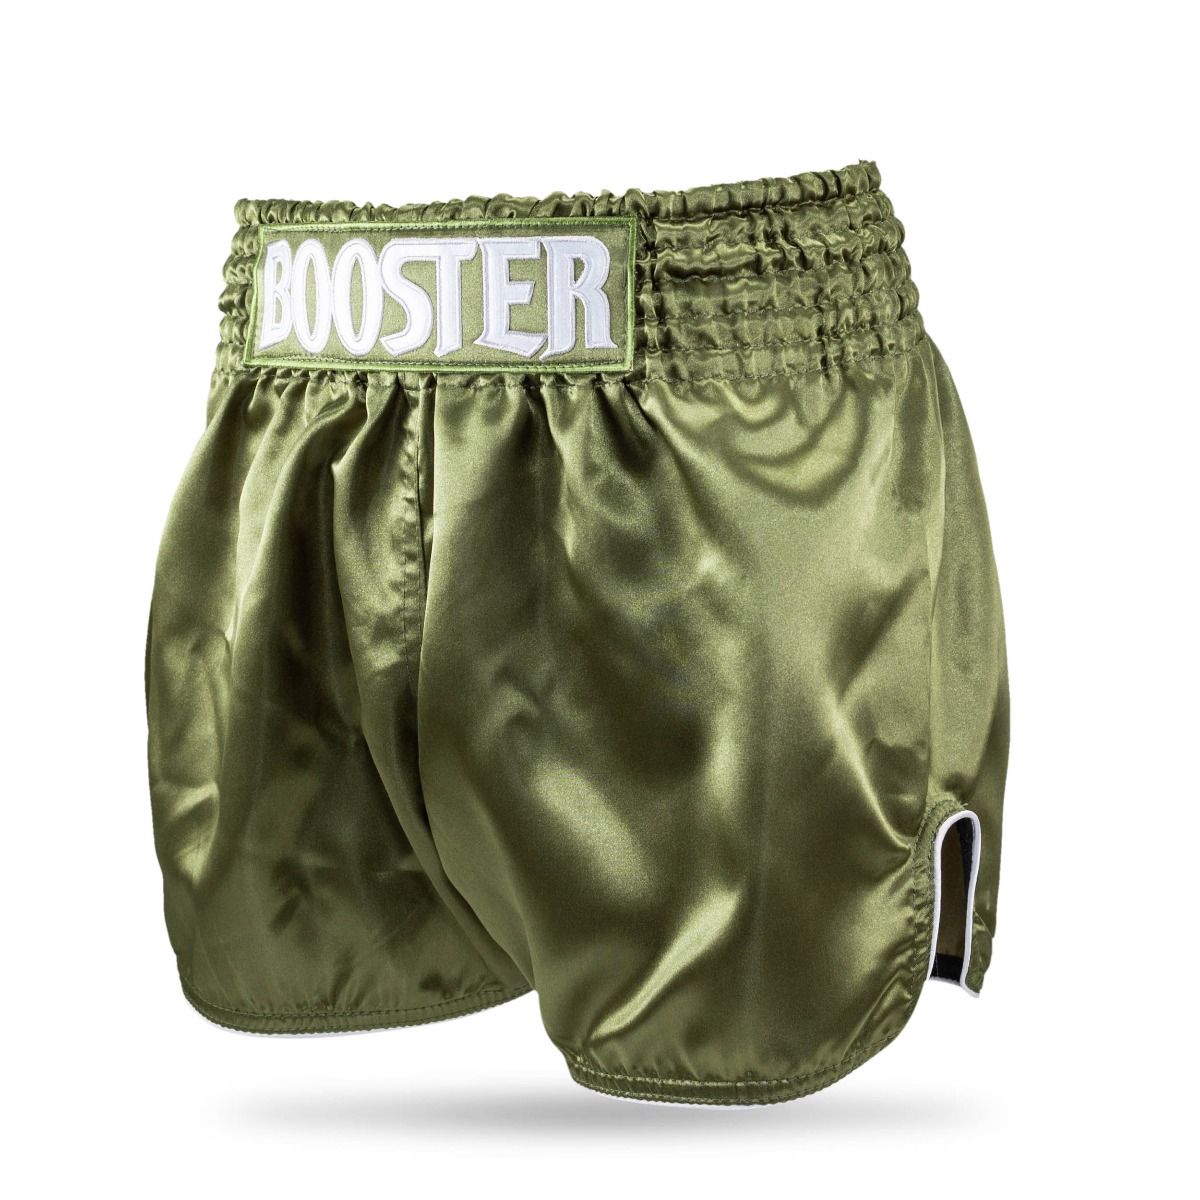 Booster Fightgear-Fightshort-Kickboks broekje-PLAIN V2-Groen